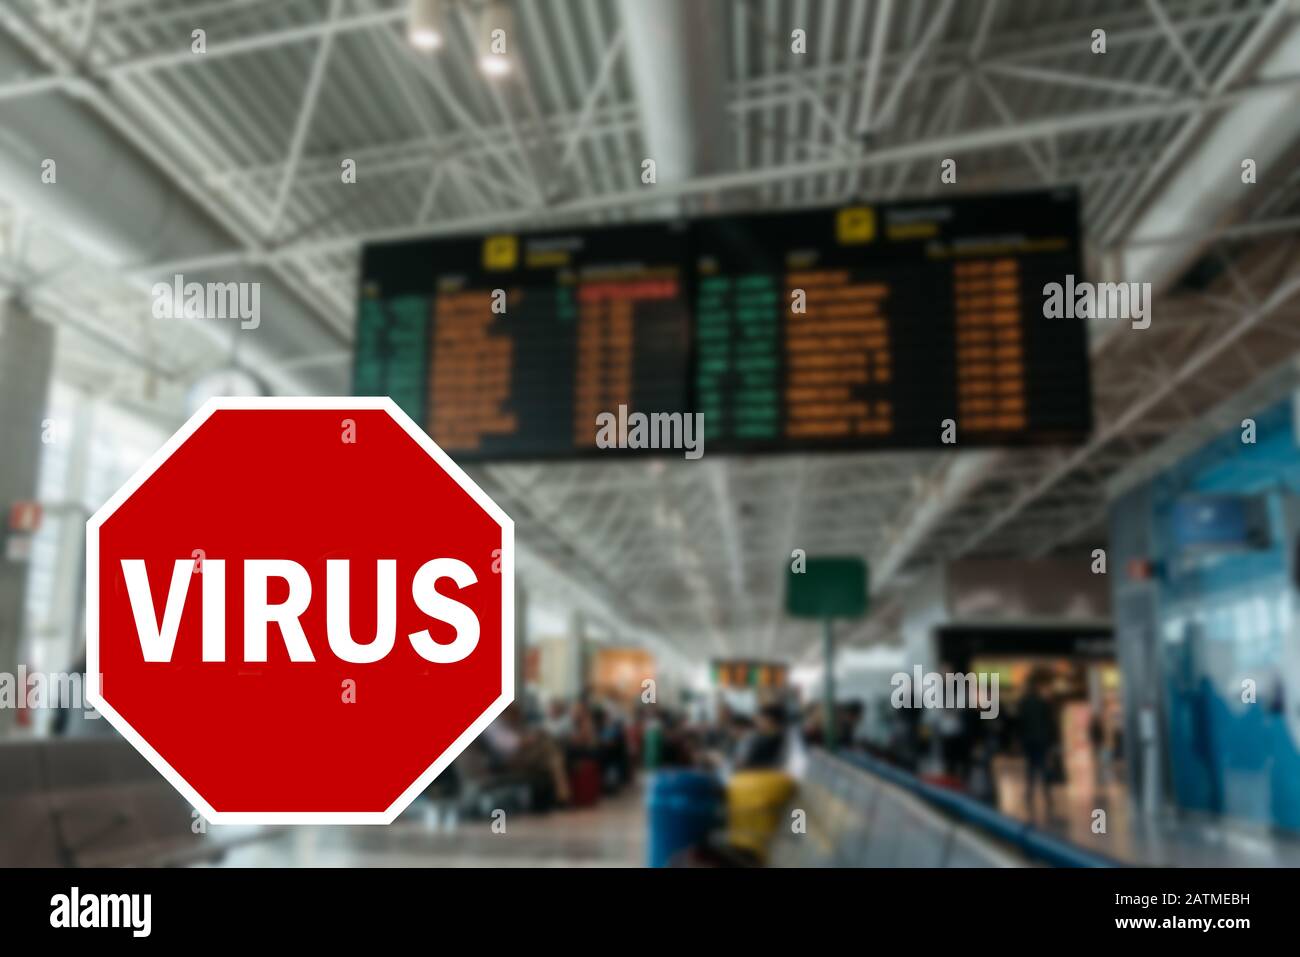 Pandemiekonzept Wuhan Coronavirus mit STOPPSCHILD mit dem Wort Virus überlagert gegen nicht identifizierbare absichtlich außerhalb des Fokus Flughafenterminals gelassen Stockfoto